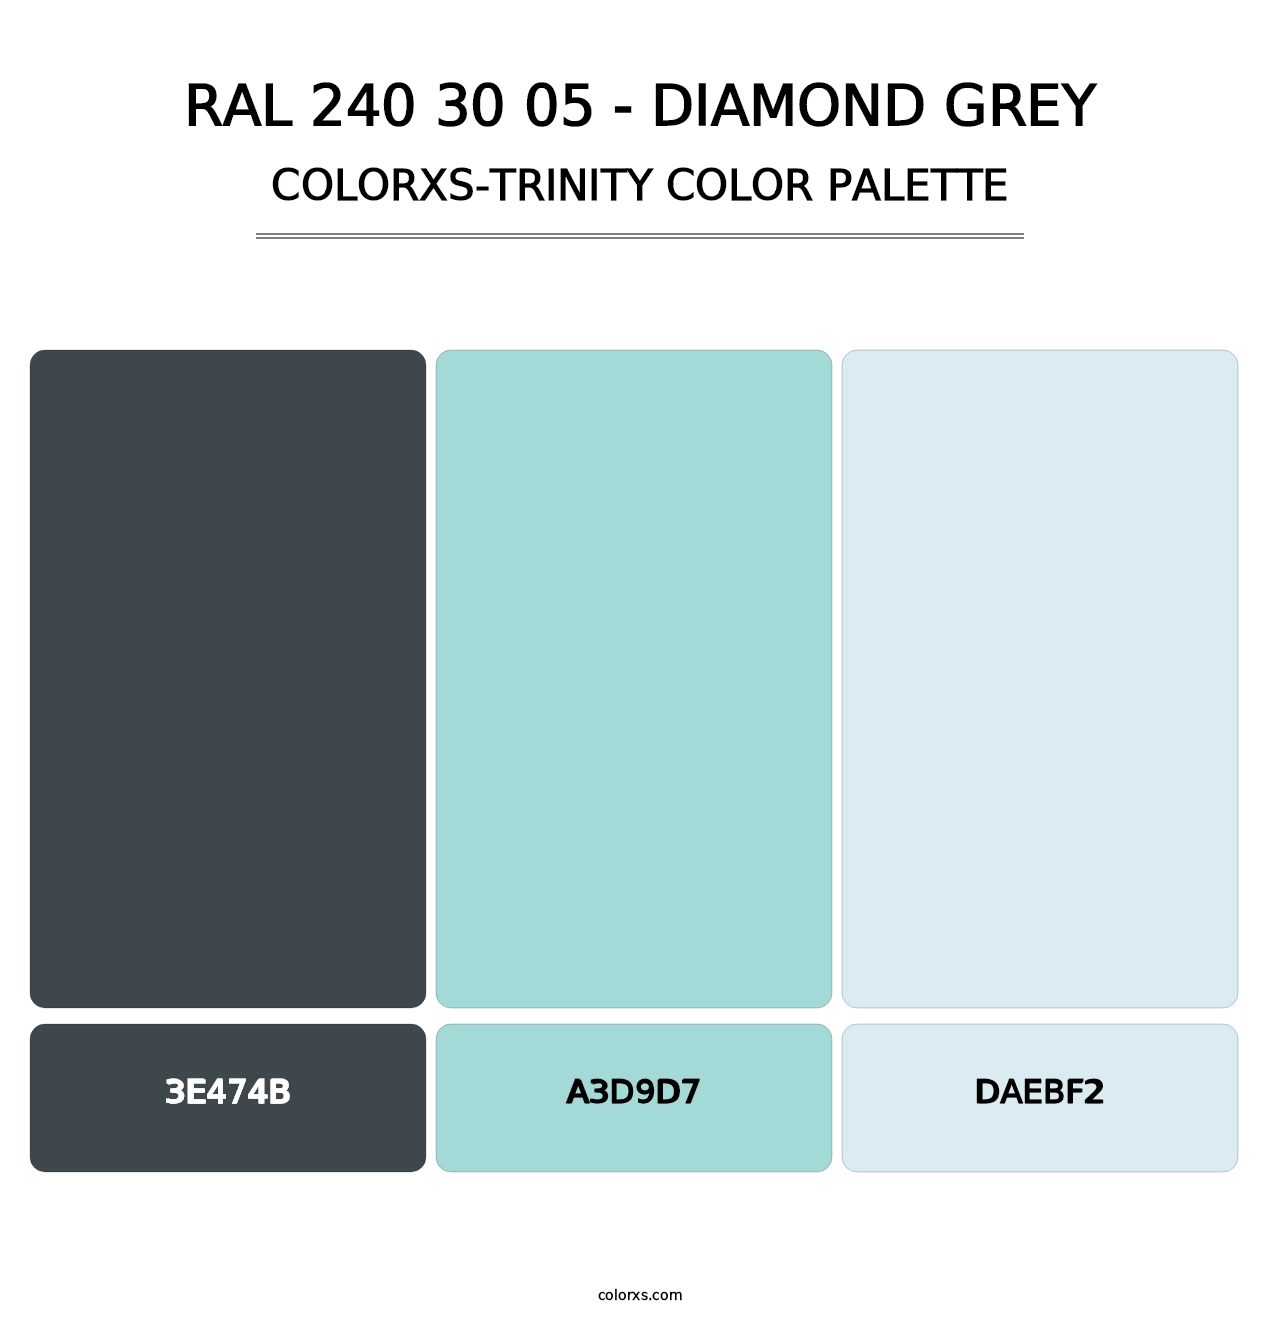 RAL 240 30 05 - Diamond Grey - Colorxs Trinity Palette